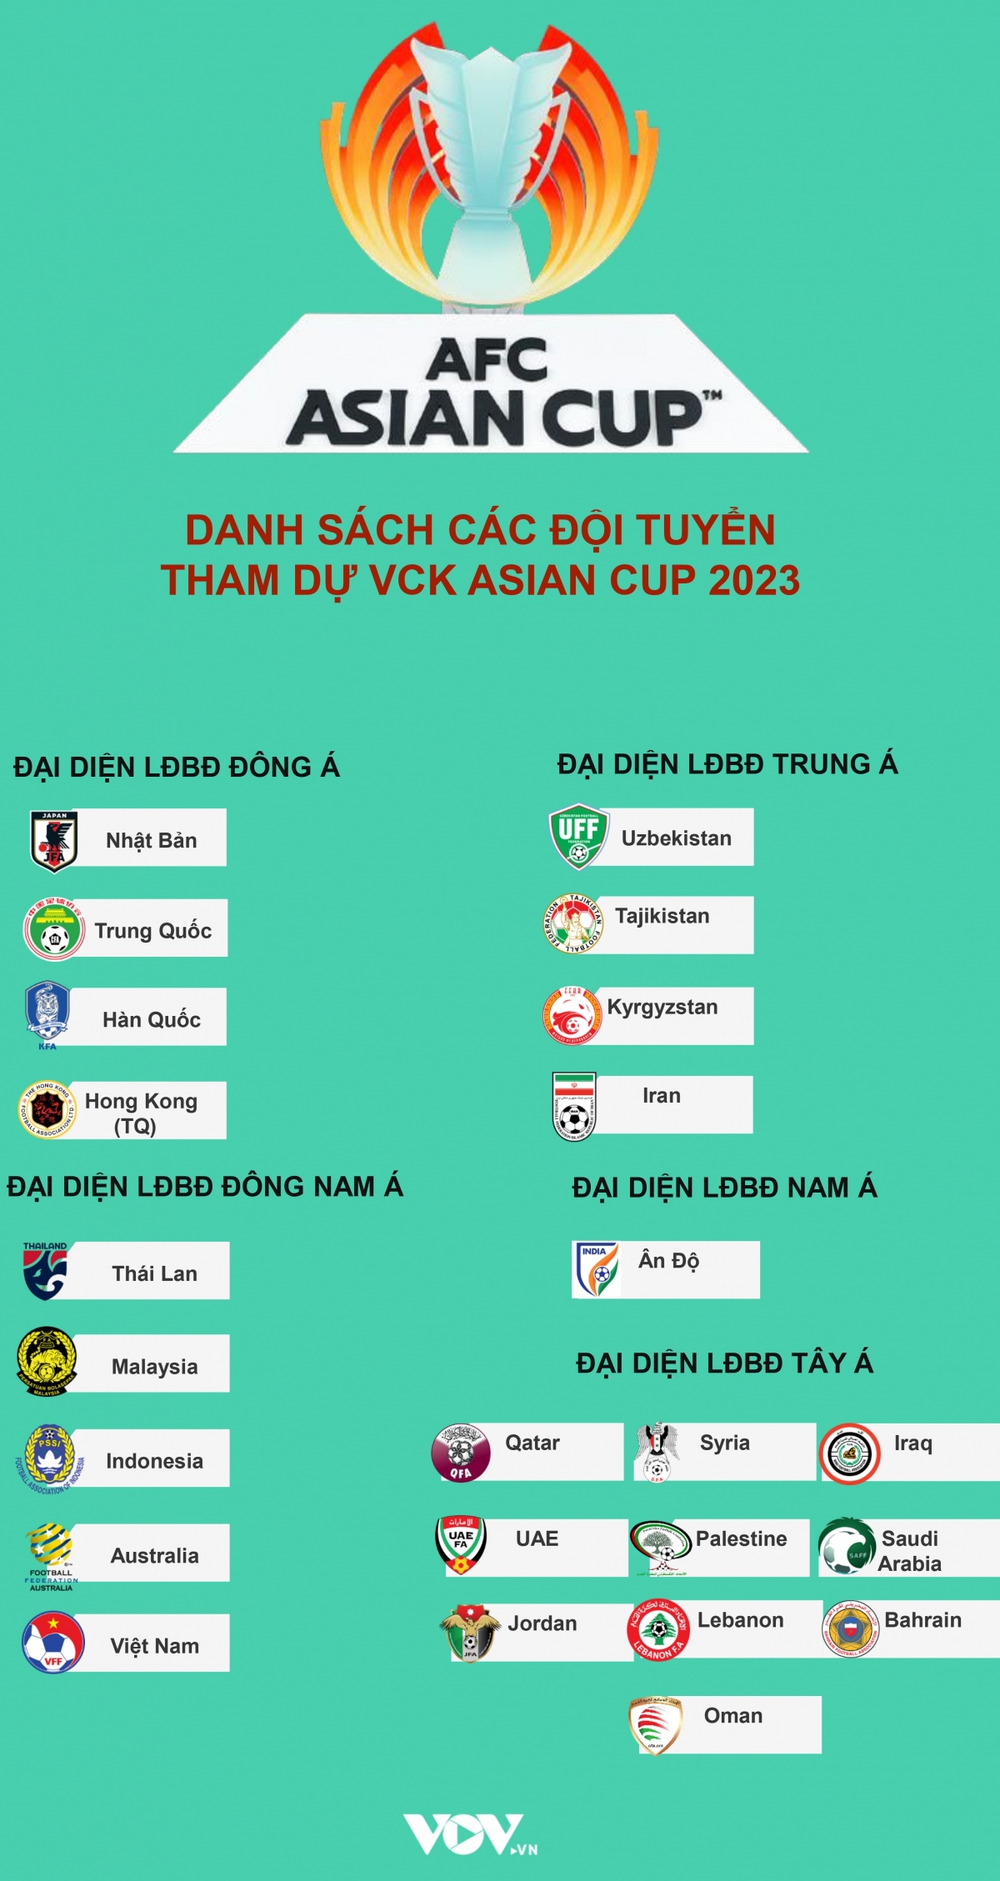 ĐT Việt Nam tiếp tục phải chờ để biết đối thủ ở VCK Asian Cup 2023 - Ảnh 2.